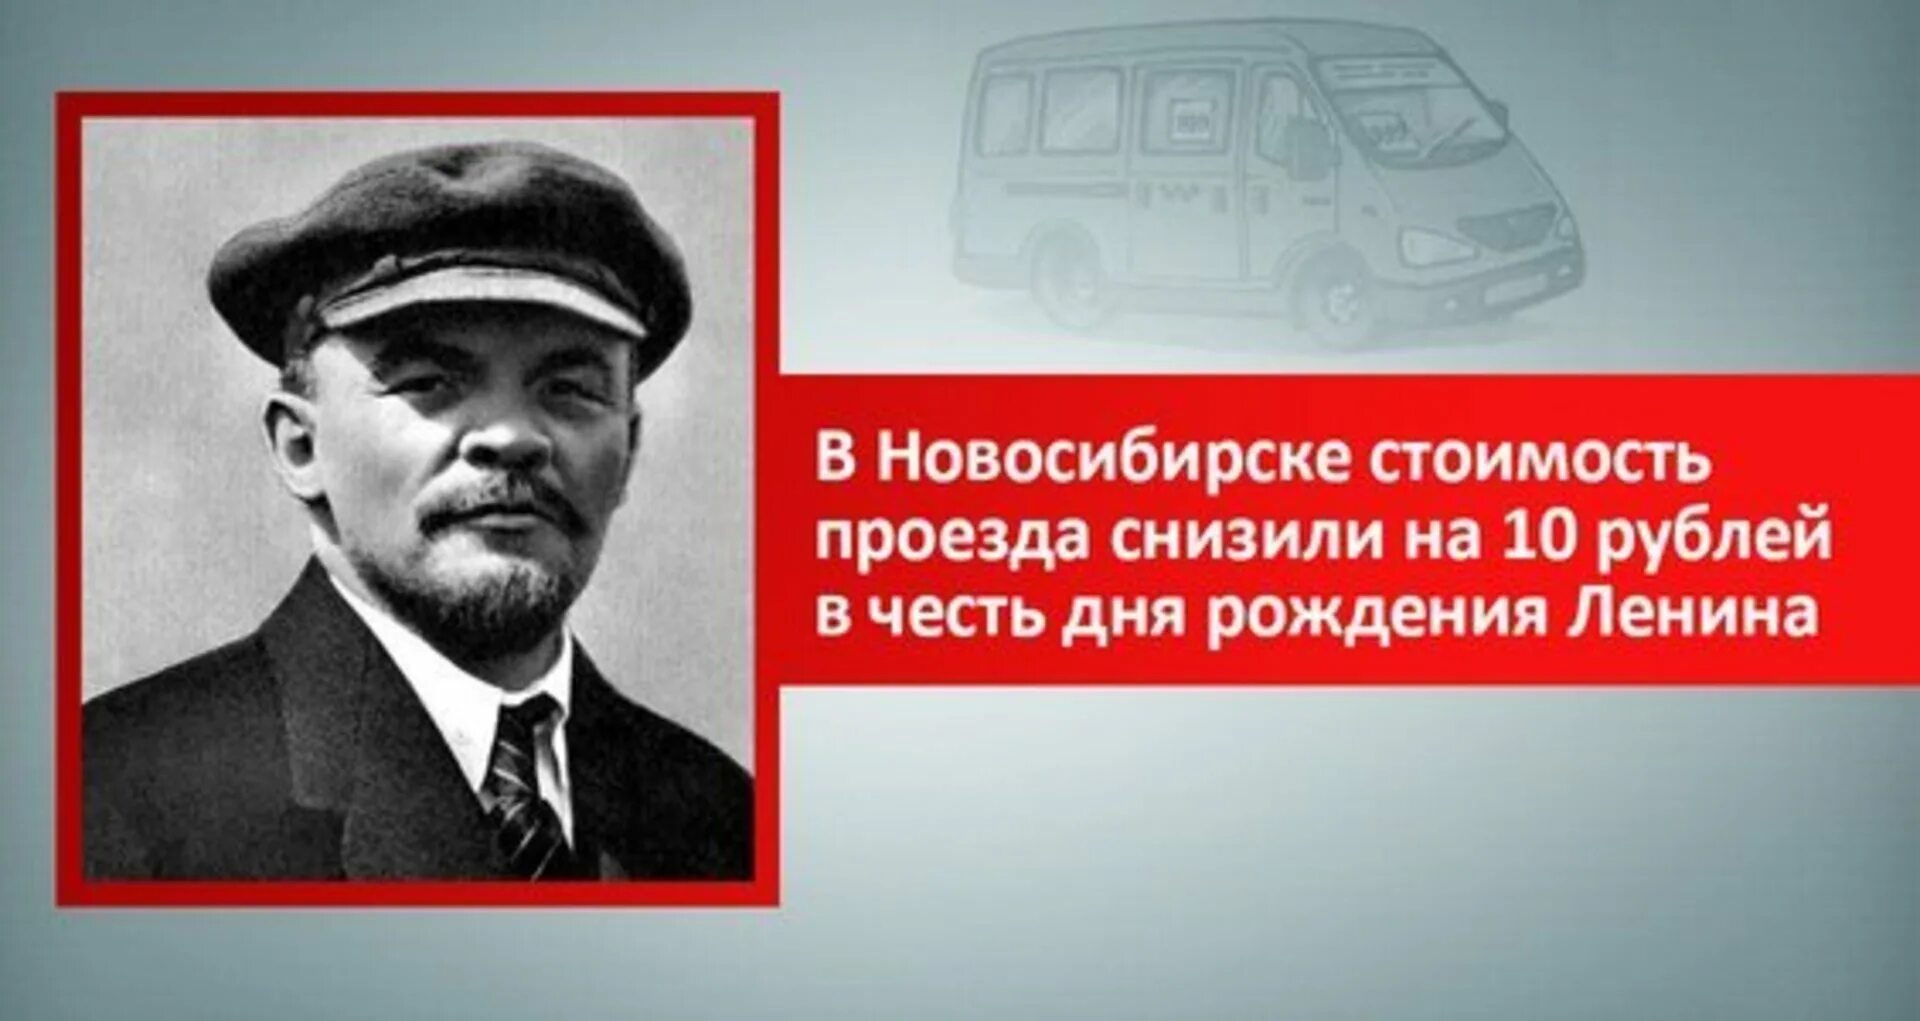 22 апреля день рождения ленина и гитлера. 22 Апреля день рождения Ленина. День рождения Ильича.